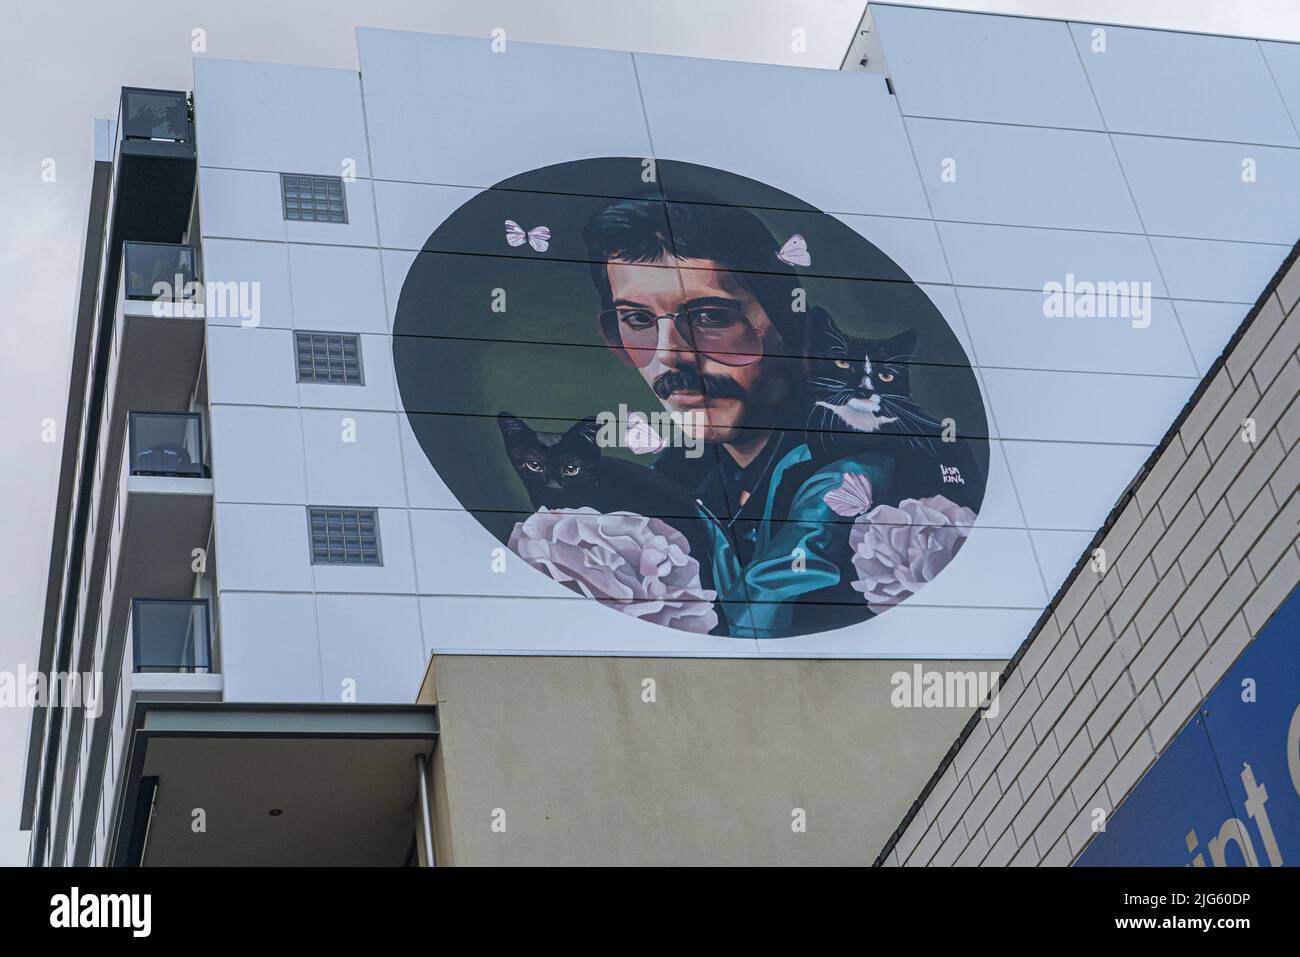 7 July 2022. A  mural of Freddie Mercury by Lisa King, in Adelaide, Australia Stock Photo